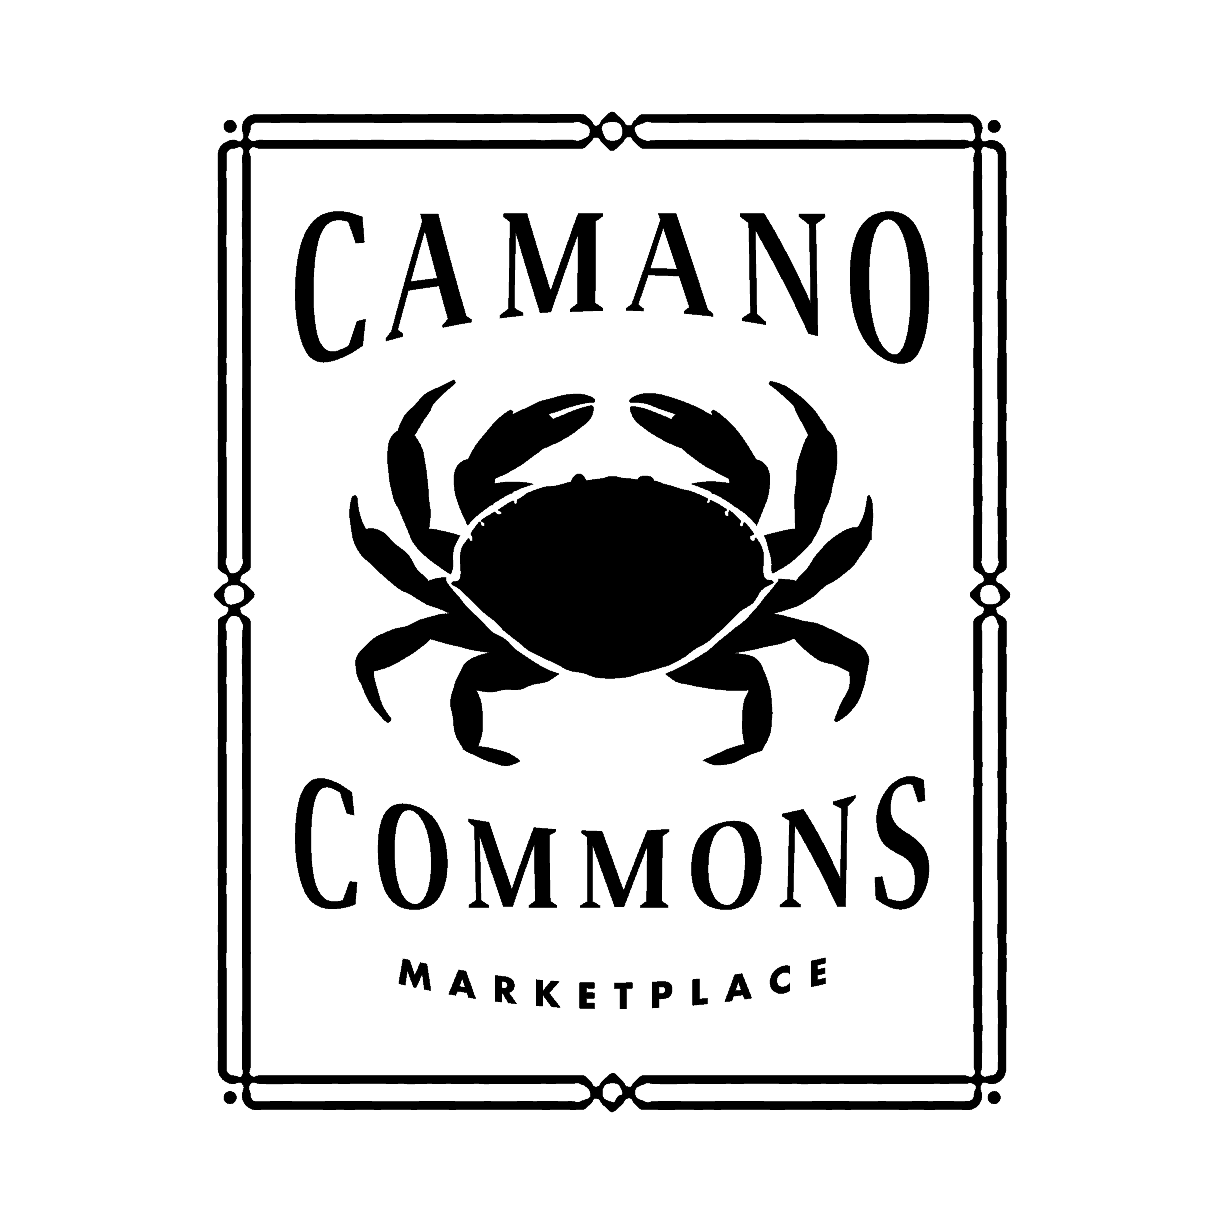 CCM Logo FINAL Black MED